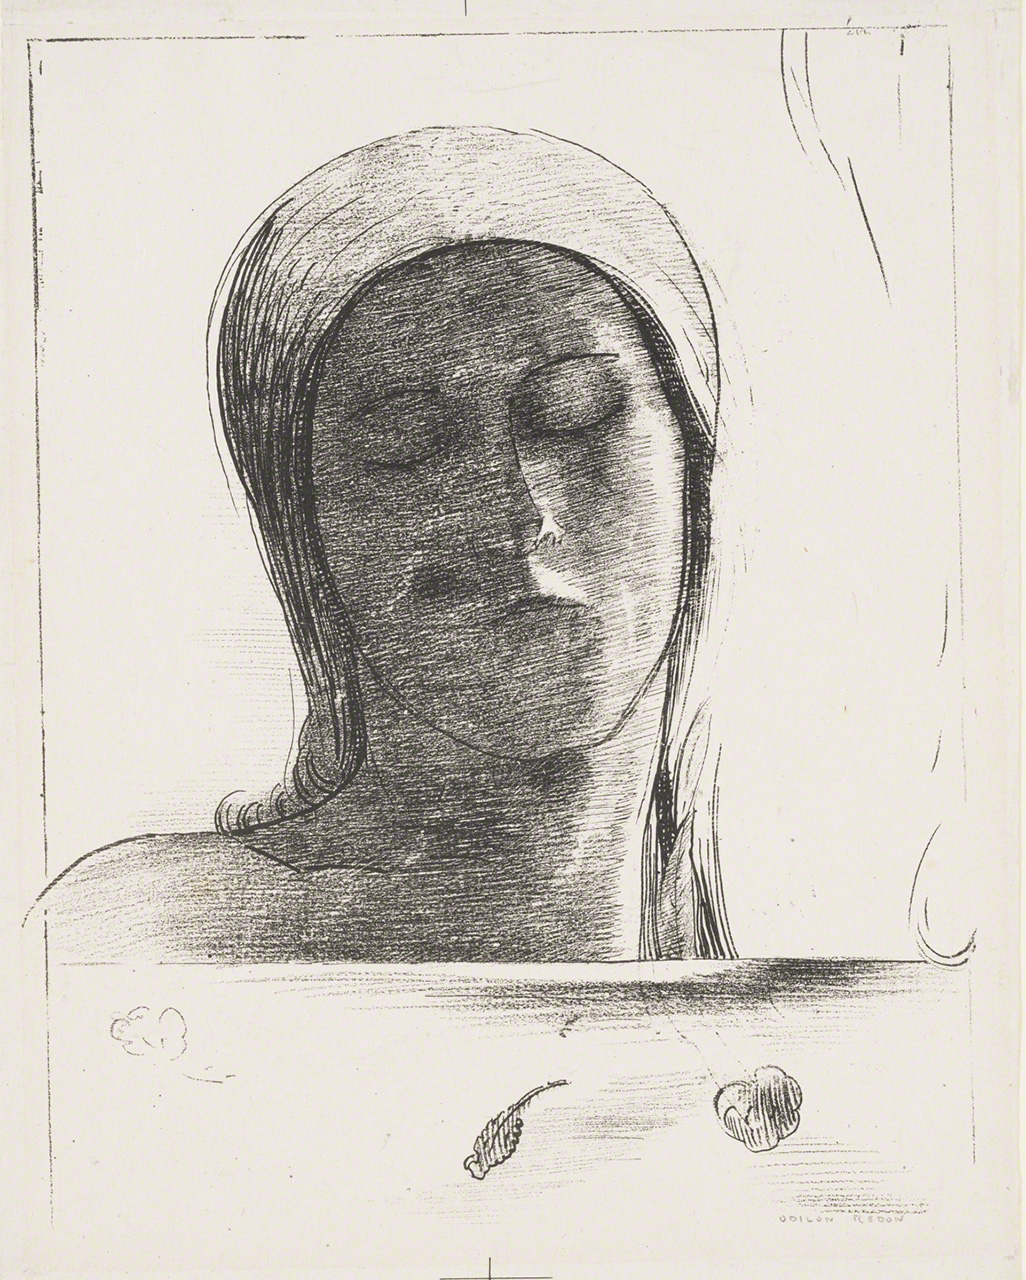 奧迪隆·雷東的畫作《閉上眼睛》。1890年創作。 29.5×23.7㎝。平板畫/紙。岐阜縣美術館藏。【三菱一號館美術館（東京丸之內）舉辦的《1894 Visions 雷東與勞特雷克畫展》（截至2021年1月17日）參展作品】